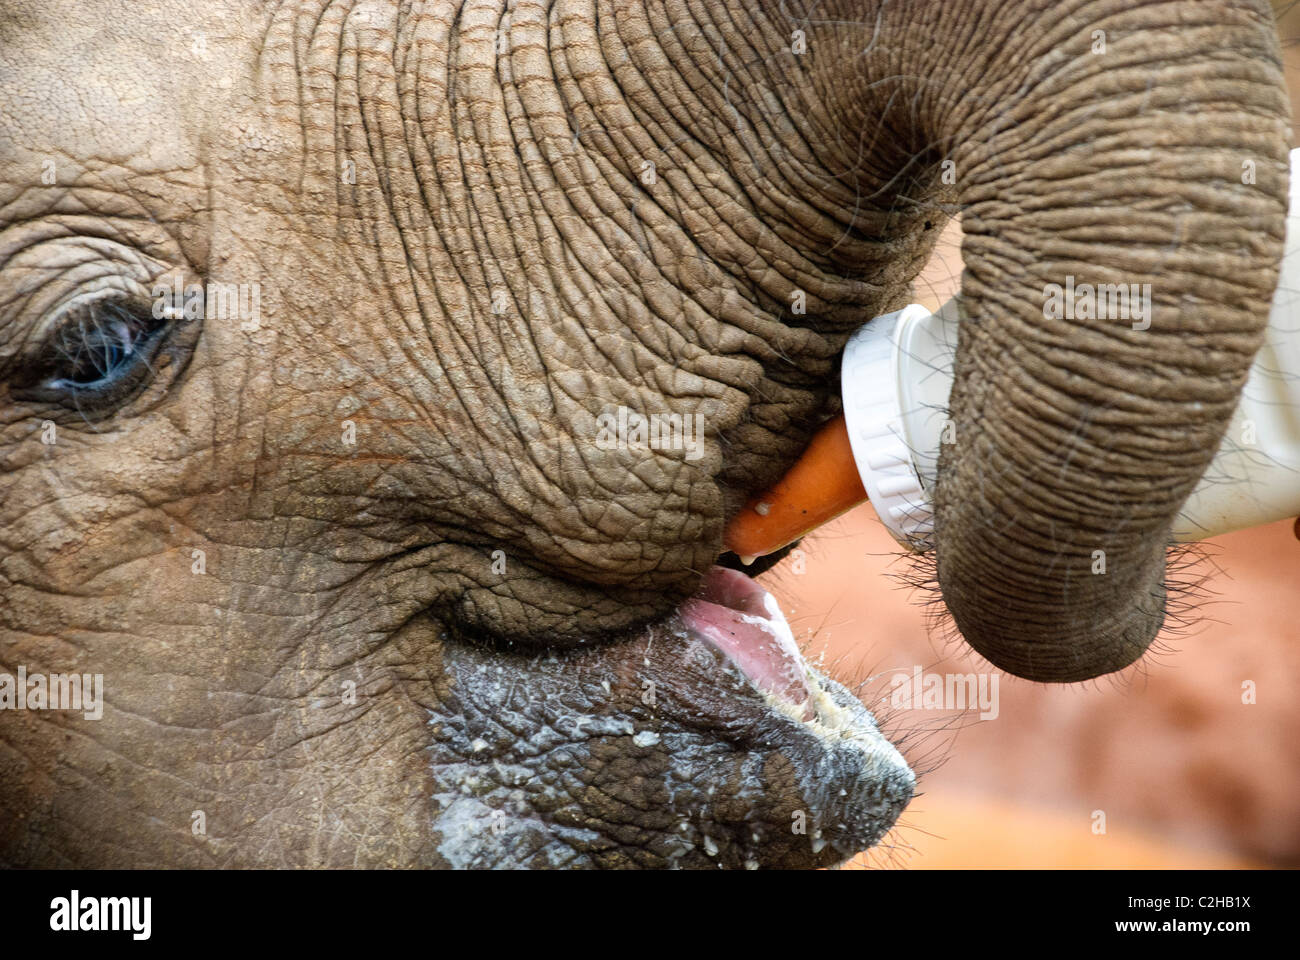 Elefante africano di vitello, Loxodonta africana, bere latte da una bottiglia, Sheldrick l'Orfanotrofio degli Elefanti, Nairobi, Kenya, Africa Foto Stock